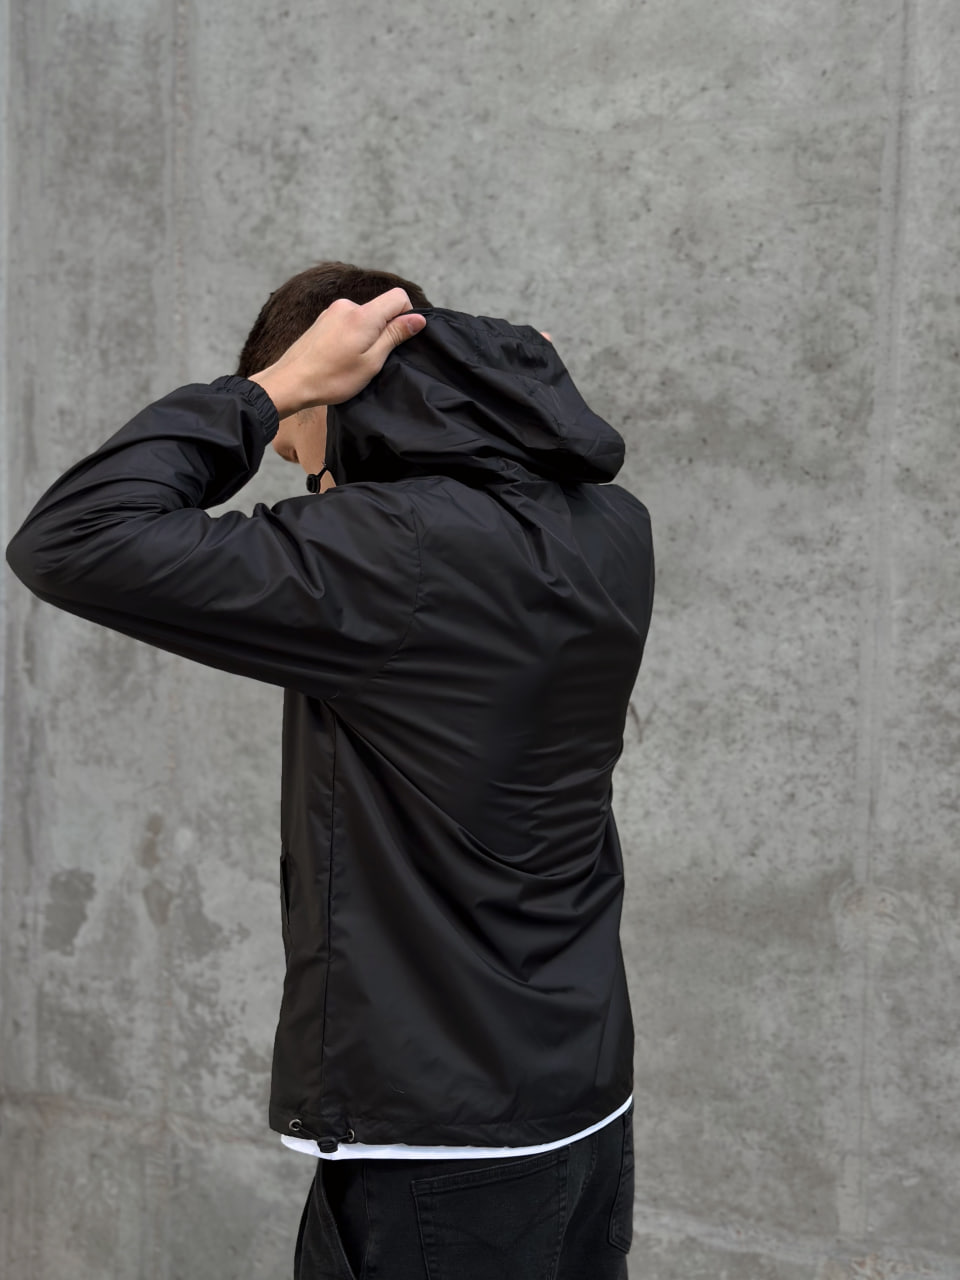 Мужская демисезонная куртка - ветровка Reload Basic чёрная - Фото 1